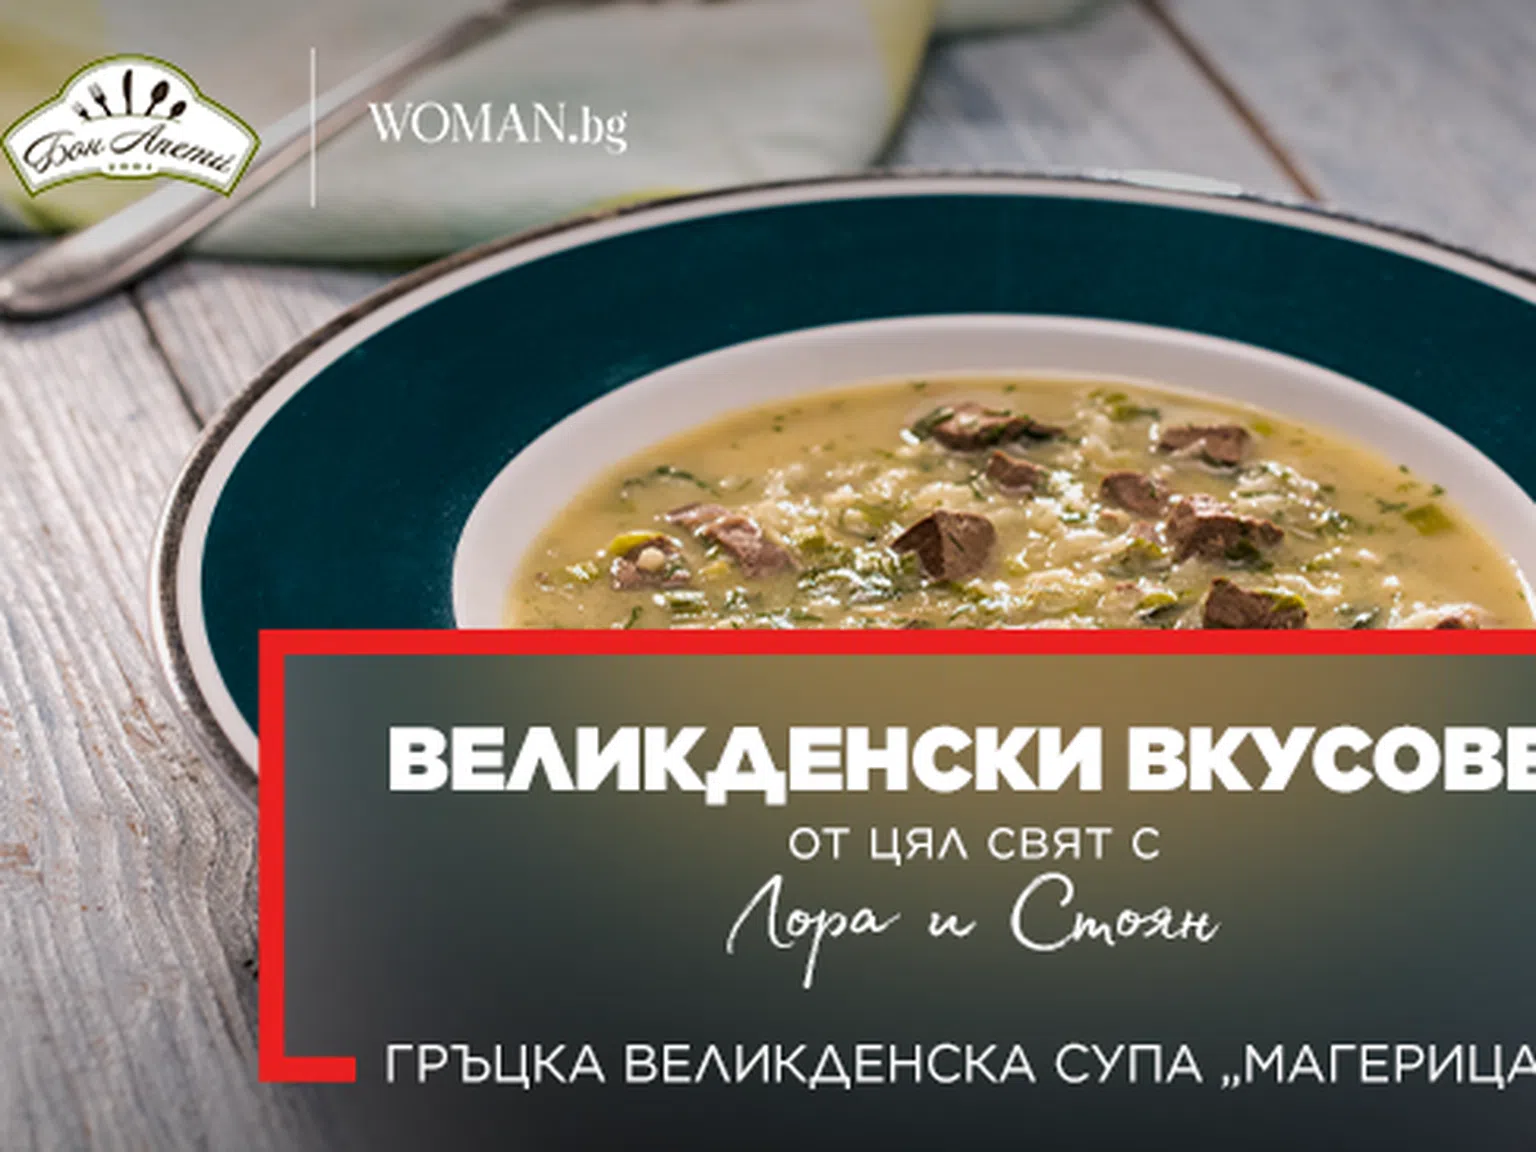 Гръцка великденска супа „Магерица“